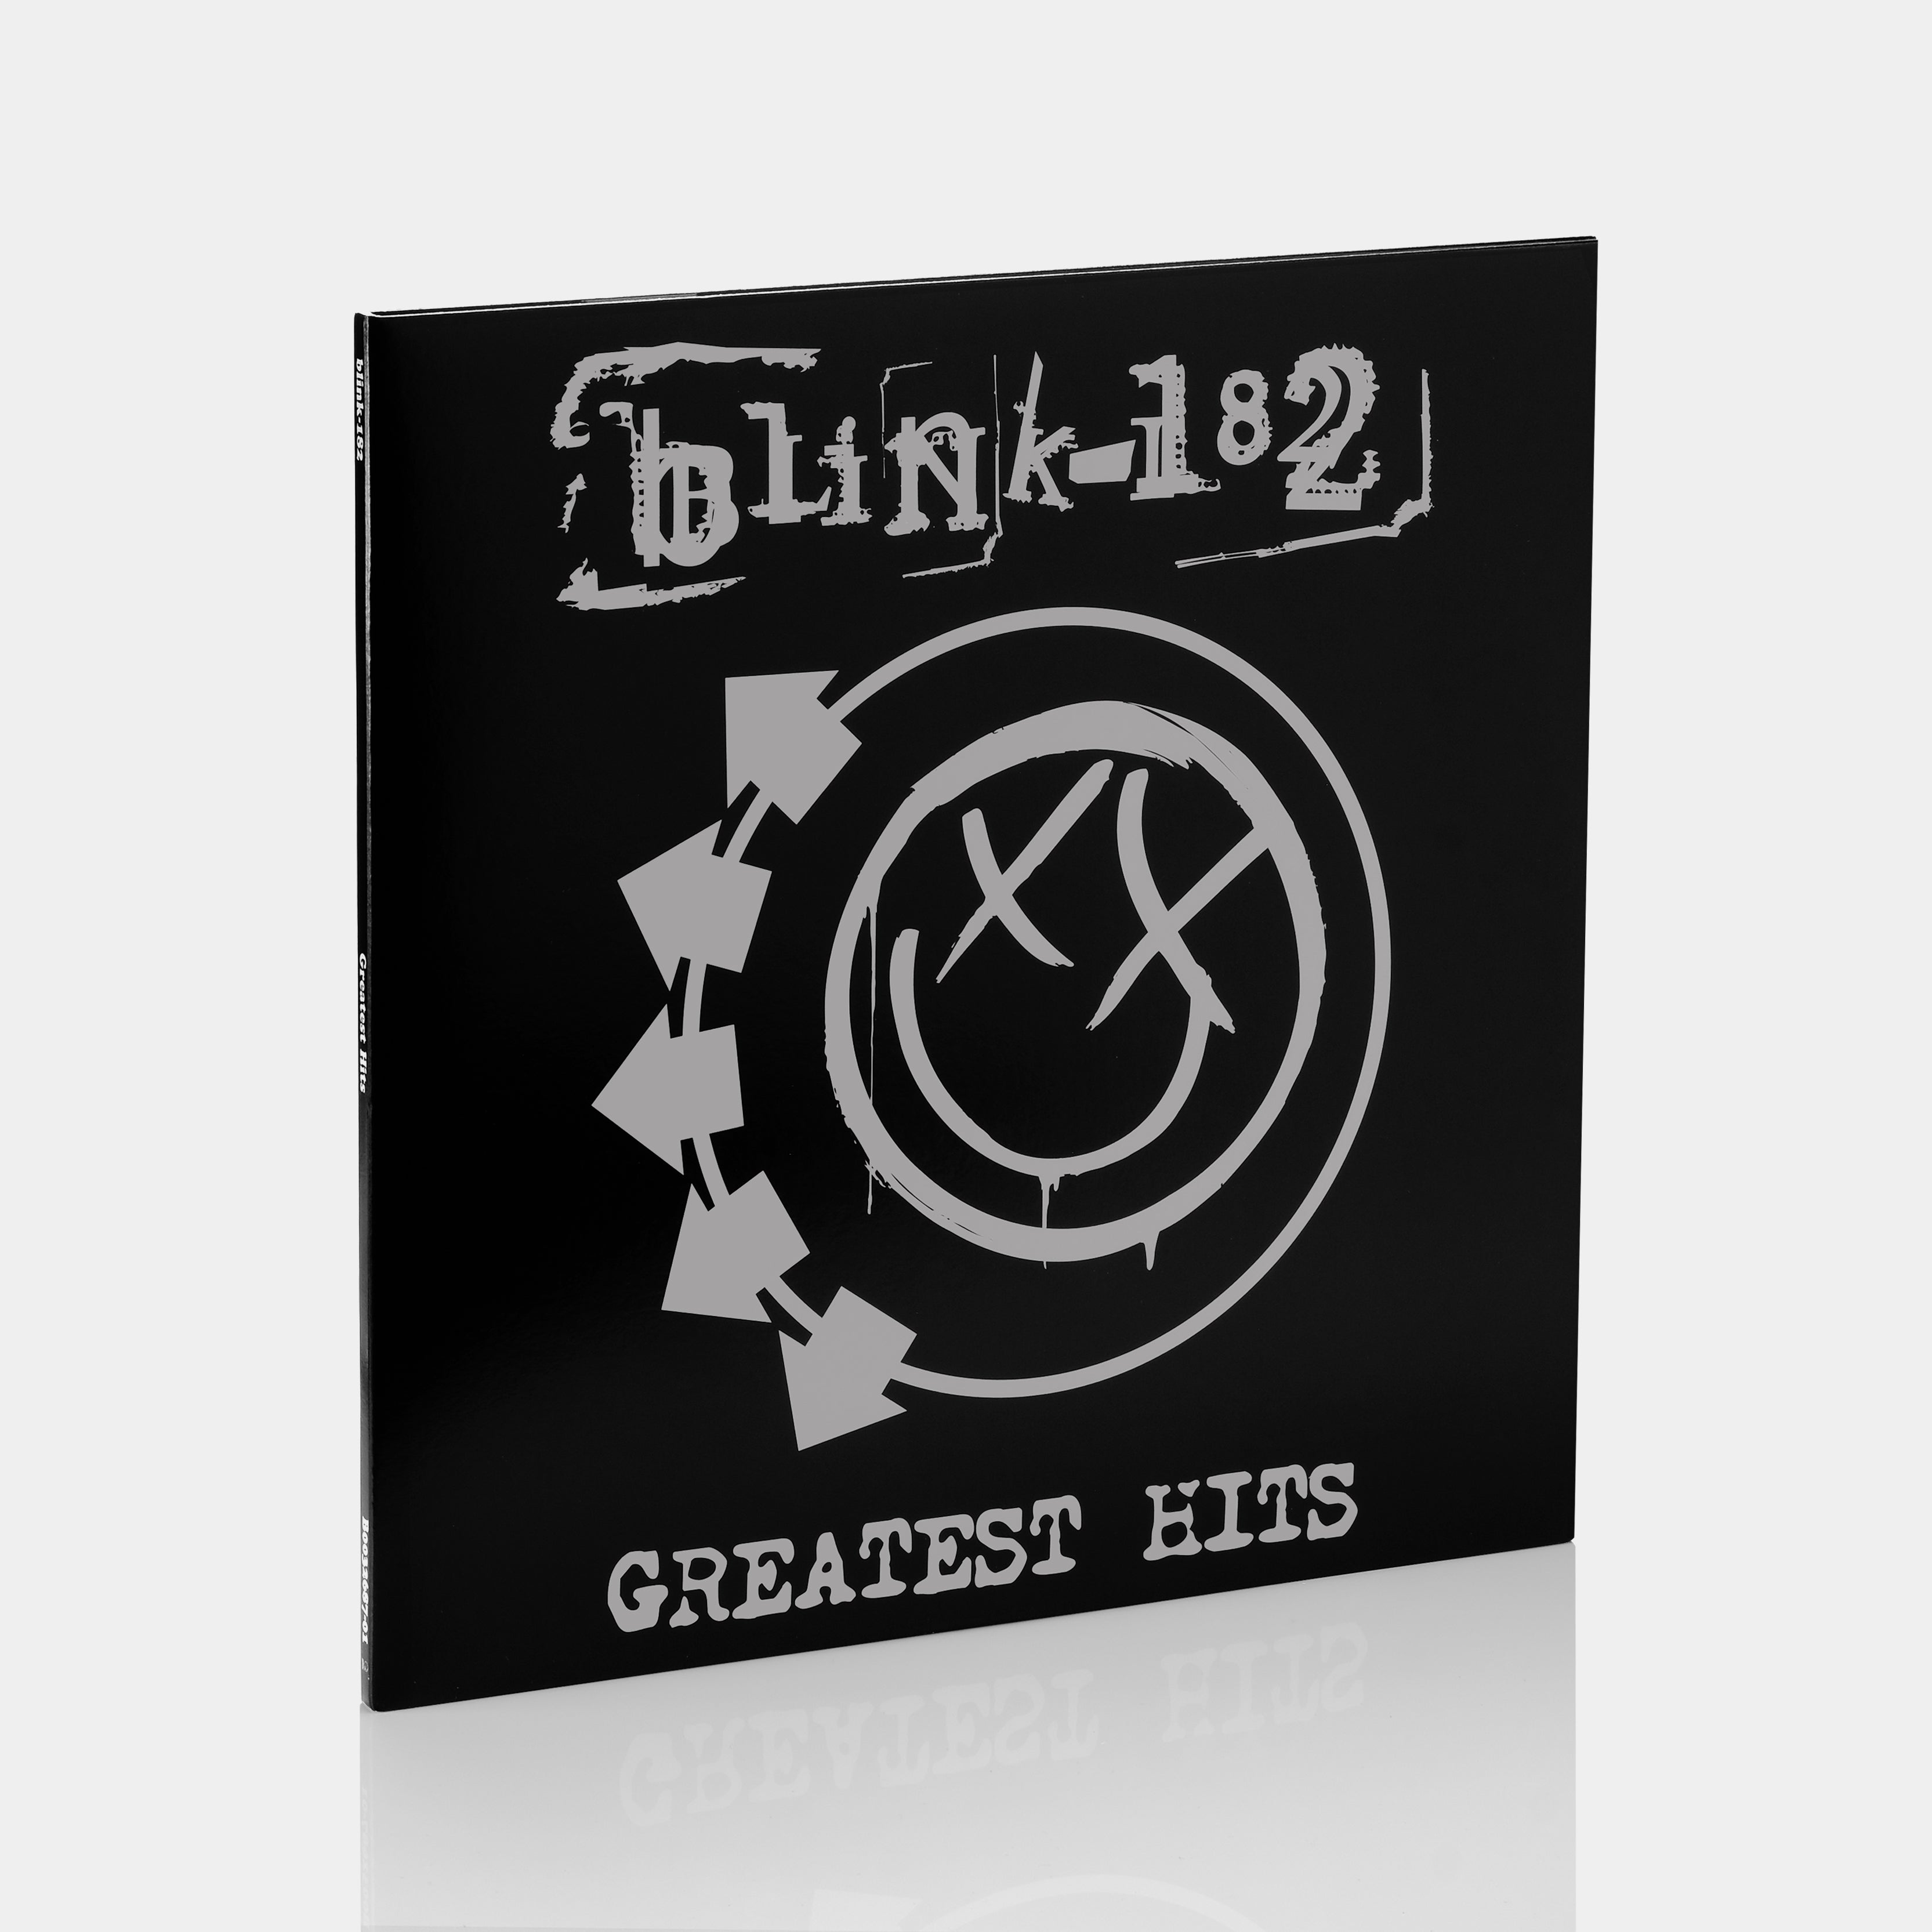 Blink-182 - Greatest Hits 2xLP Vinyl Record